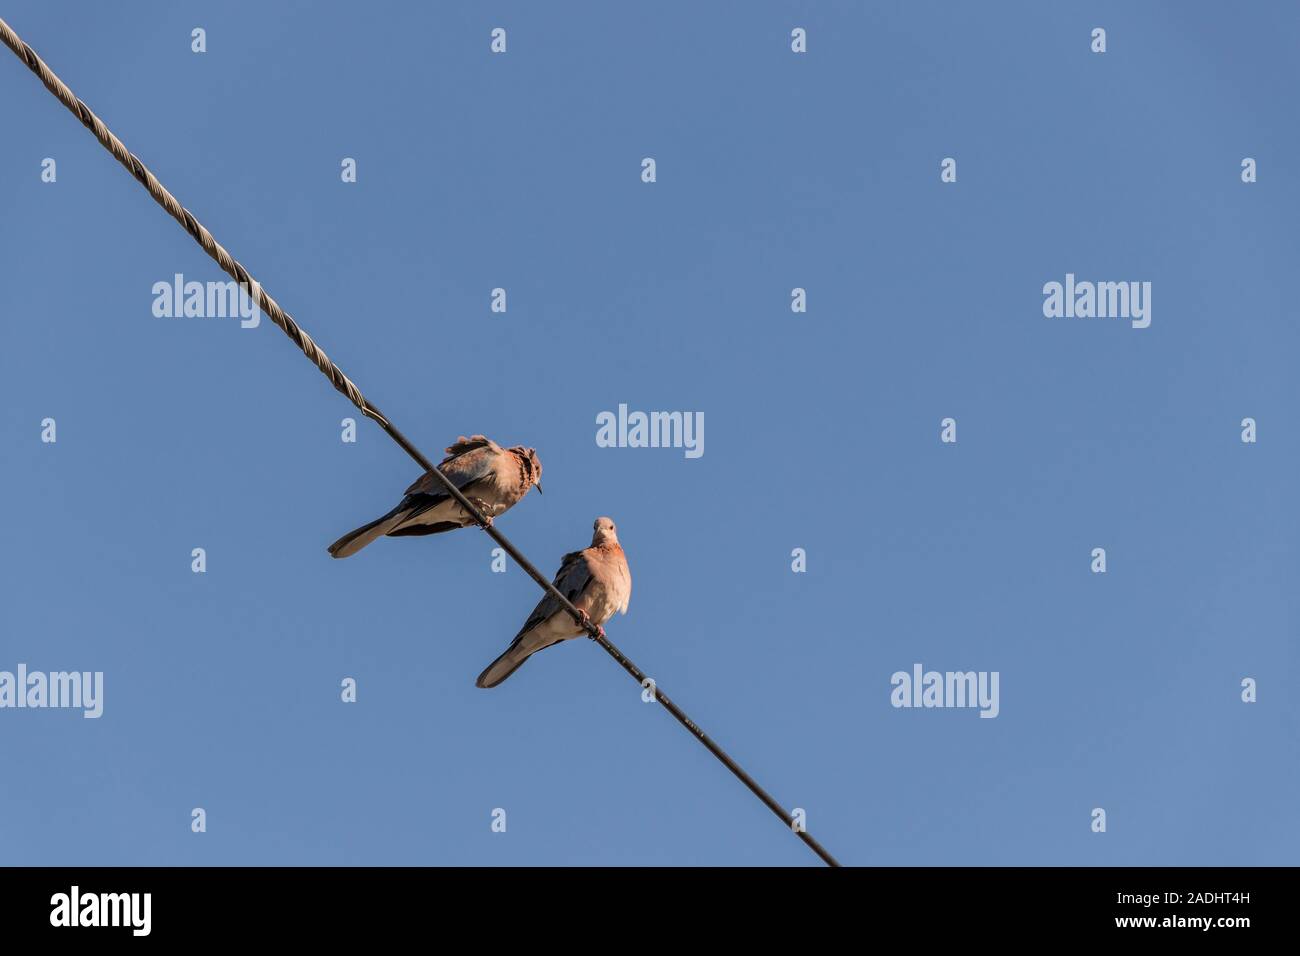 Tauben, Vögel, sitzen auf power line in Kapstadt, Südafrika. Stockfoto